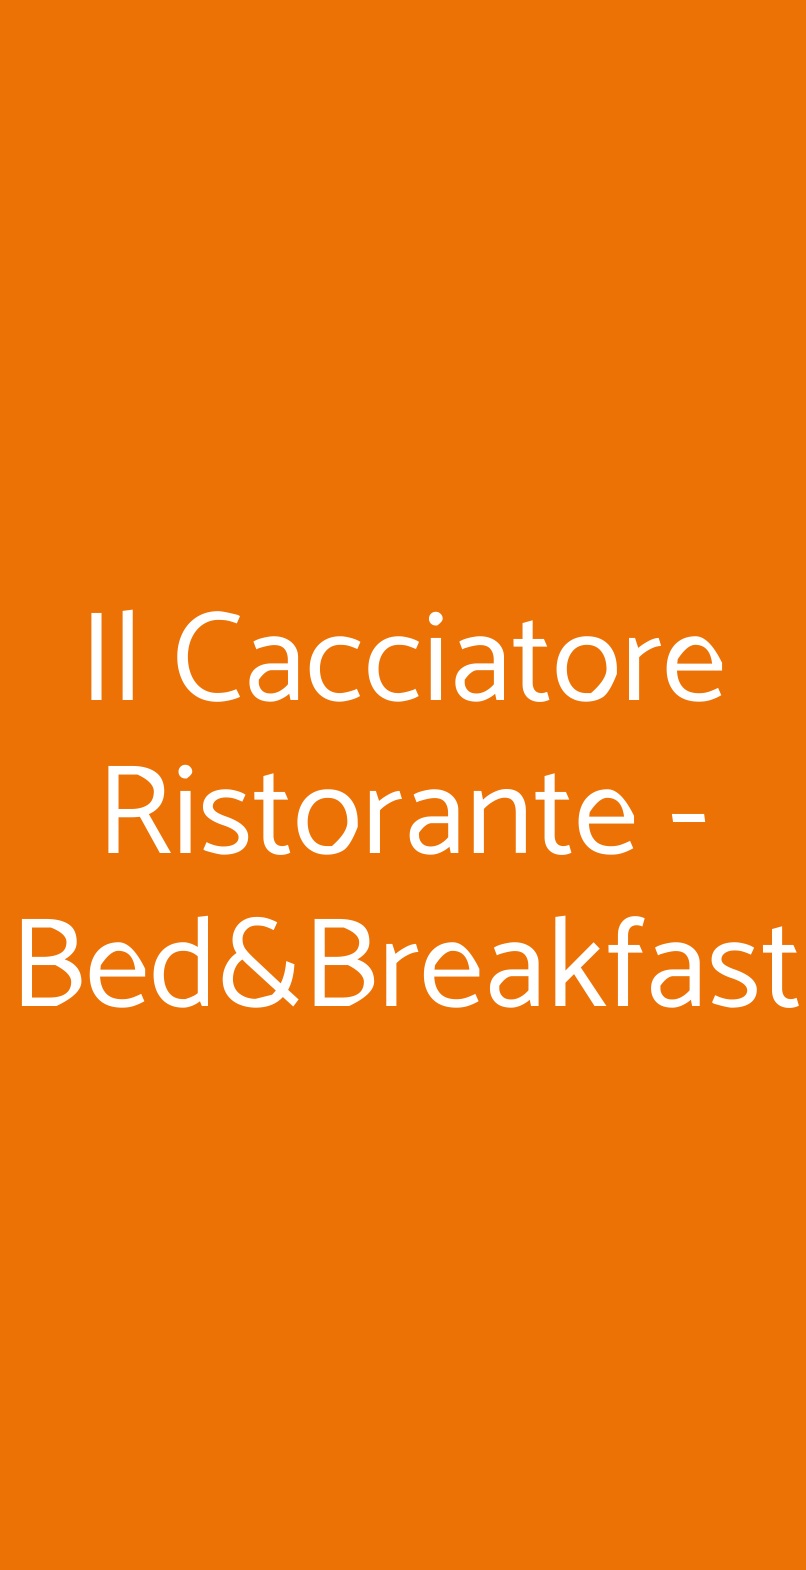 Il Cacciatore Ristorante - Bed&Breakfast Peschici menù 1 pagina